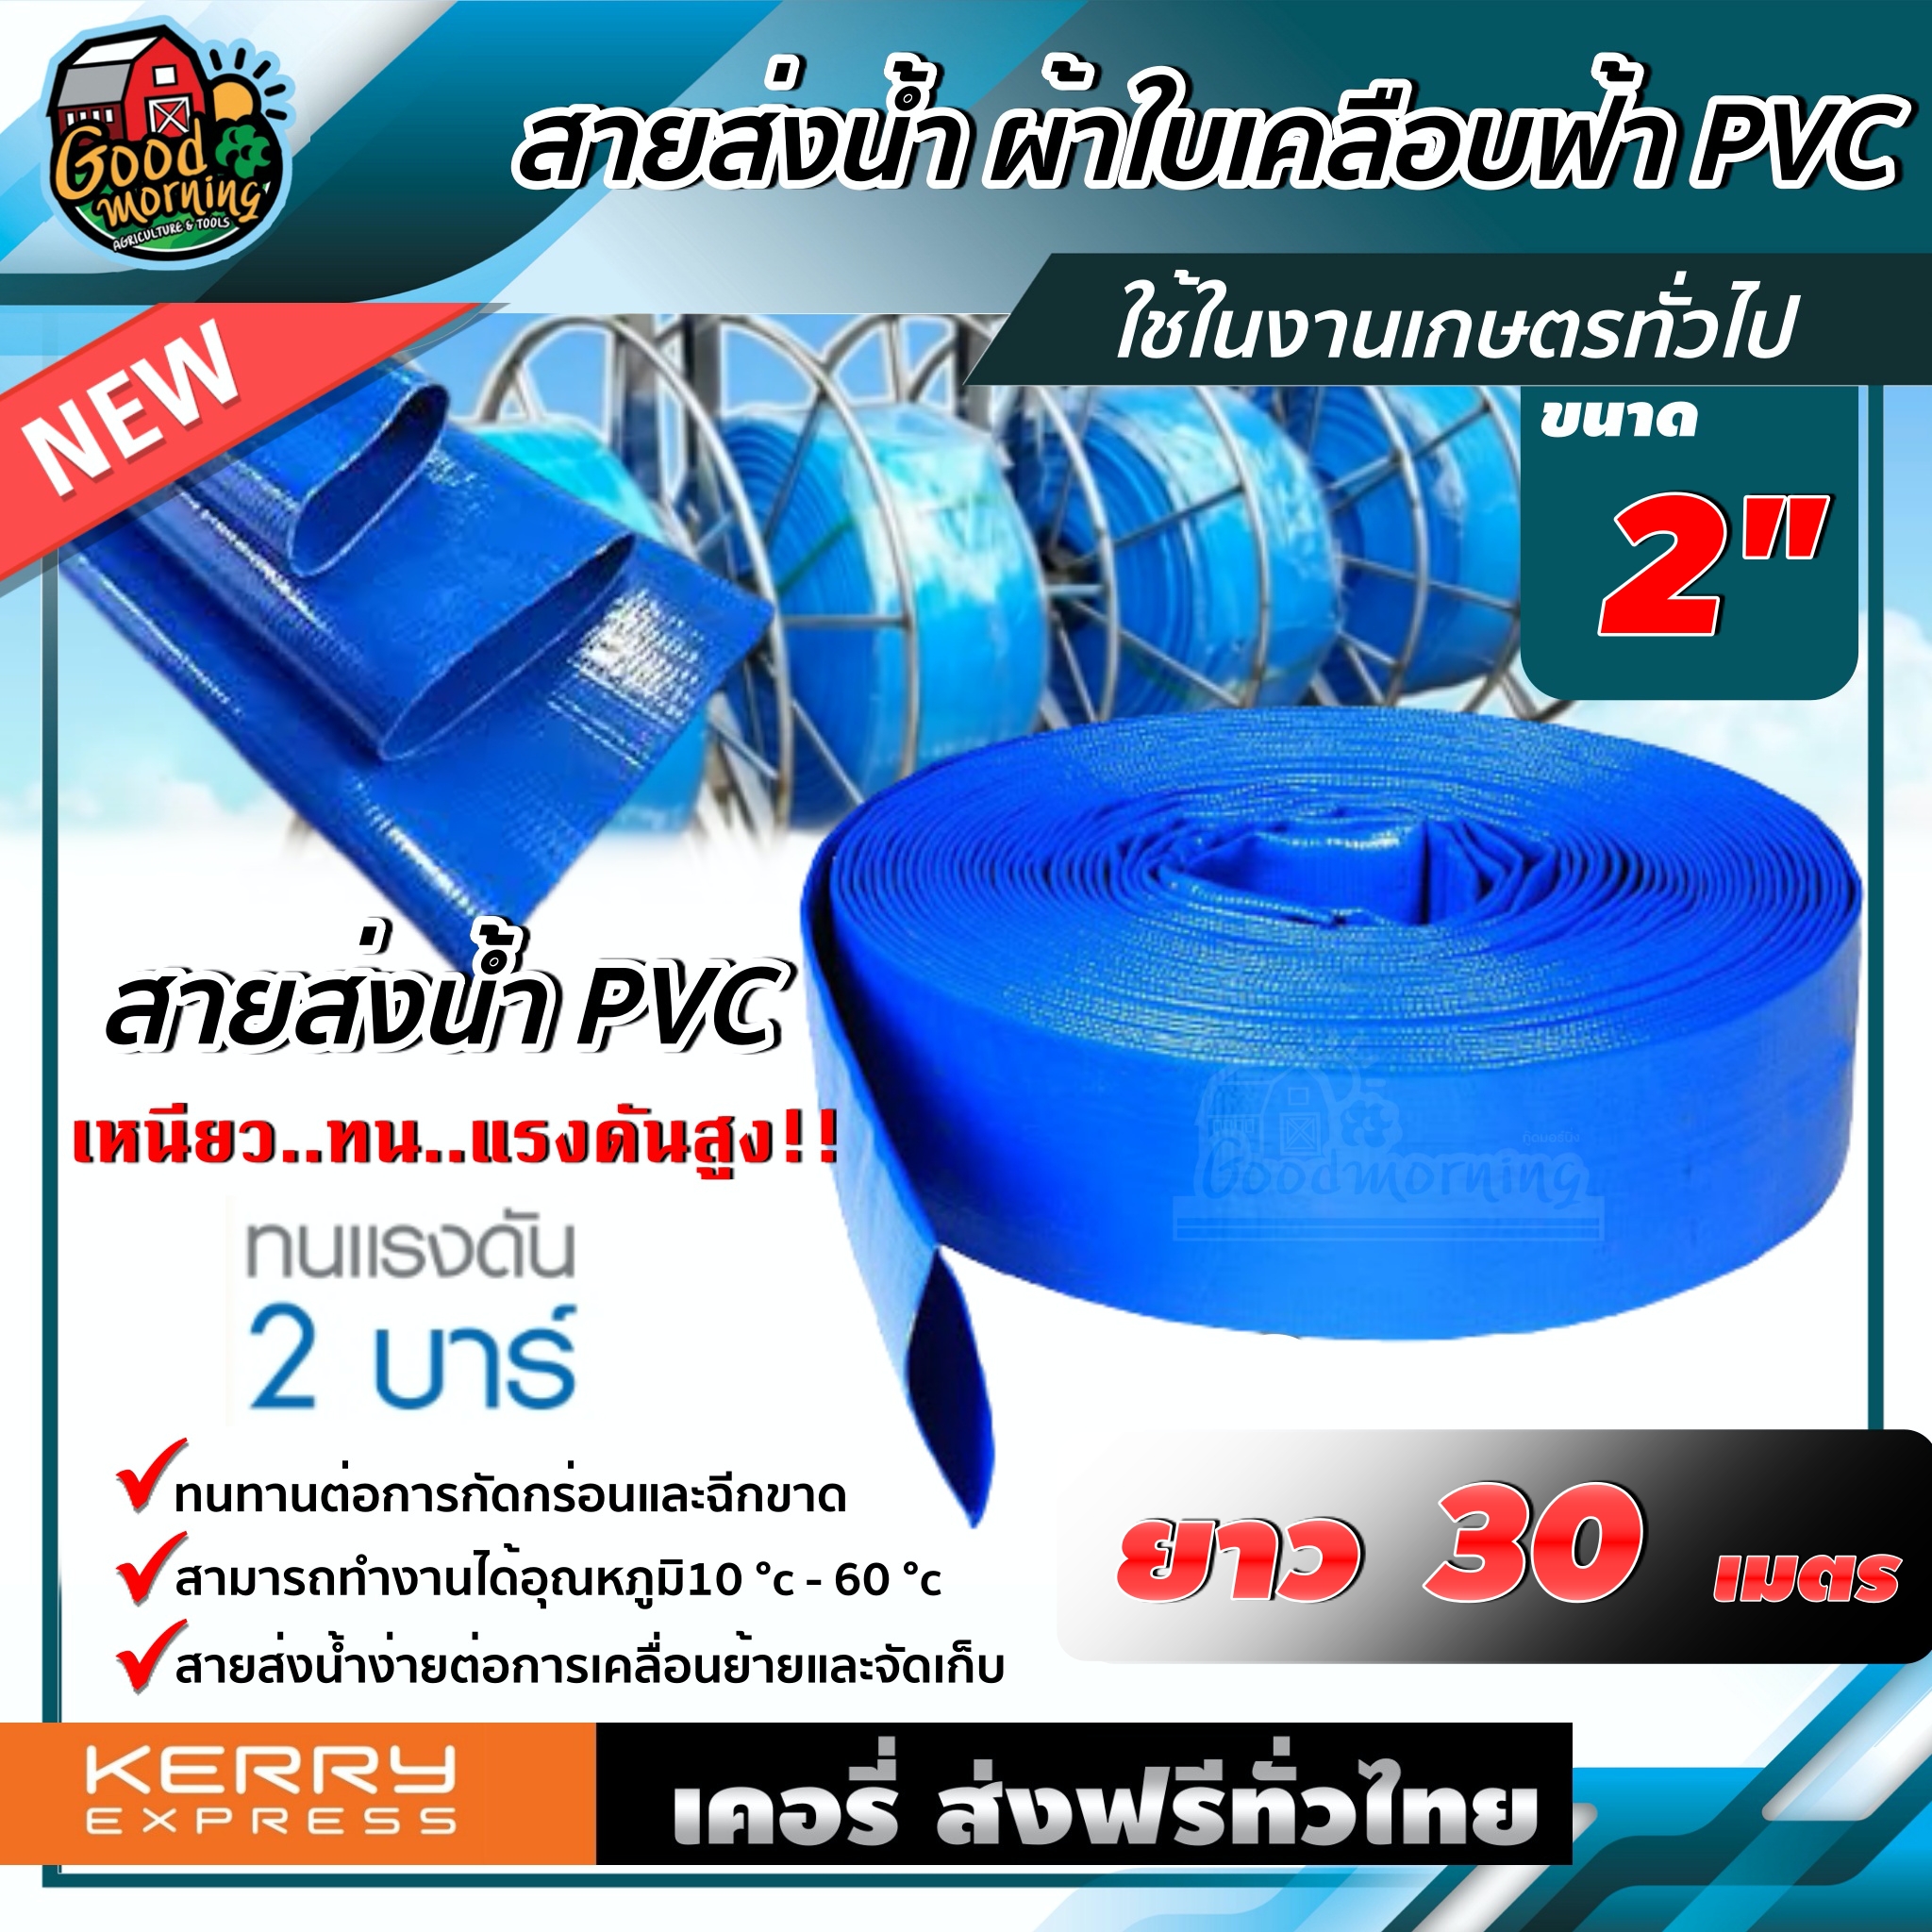 สายส่งน้ำ ผ้าใบเคลือบฟ้า PVC 2 นิ้ว ยาว 30 เมตร สายส่งน้ำสีฟ้า สายดับเพลิง ใช้ในงานเกษตรทั่วไป อุปกรณ์เกษตร สวน สายส่งน้ำ ระบบน้ำ ส่งฟรีทั่วไทย เก็บเงินปลายทาง